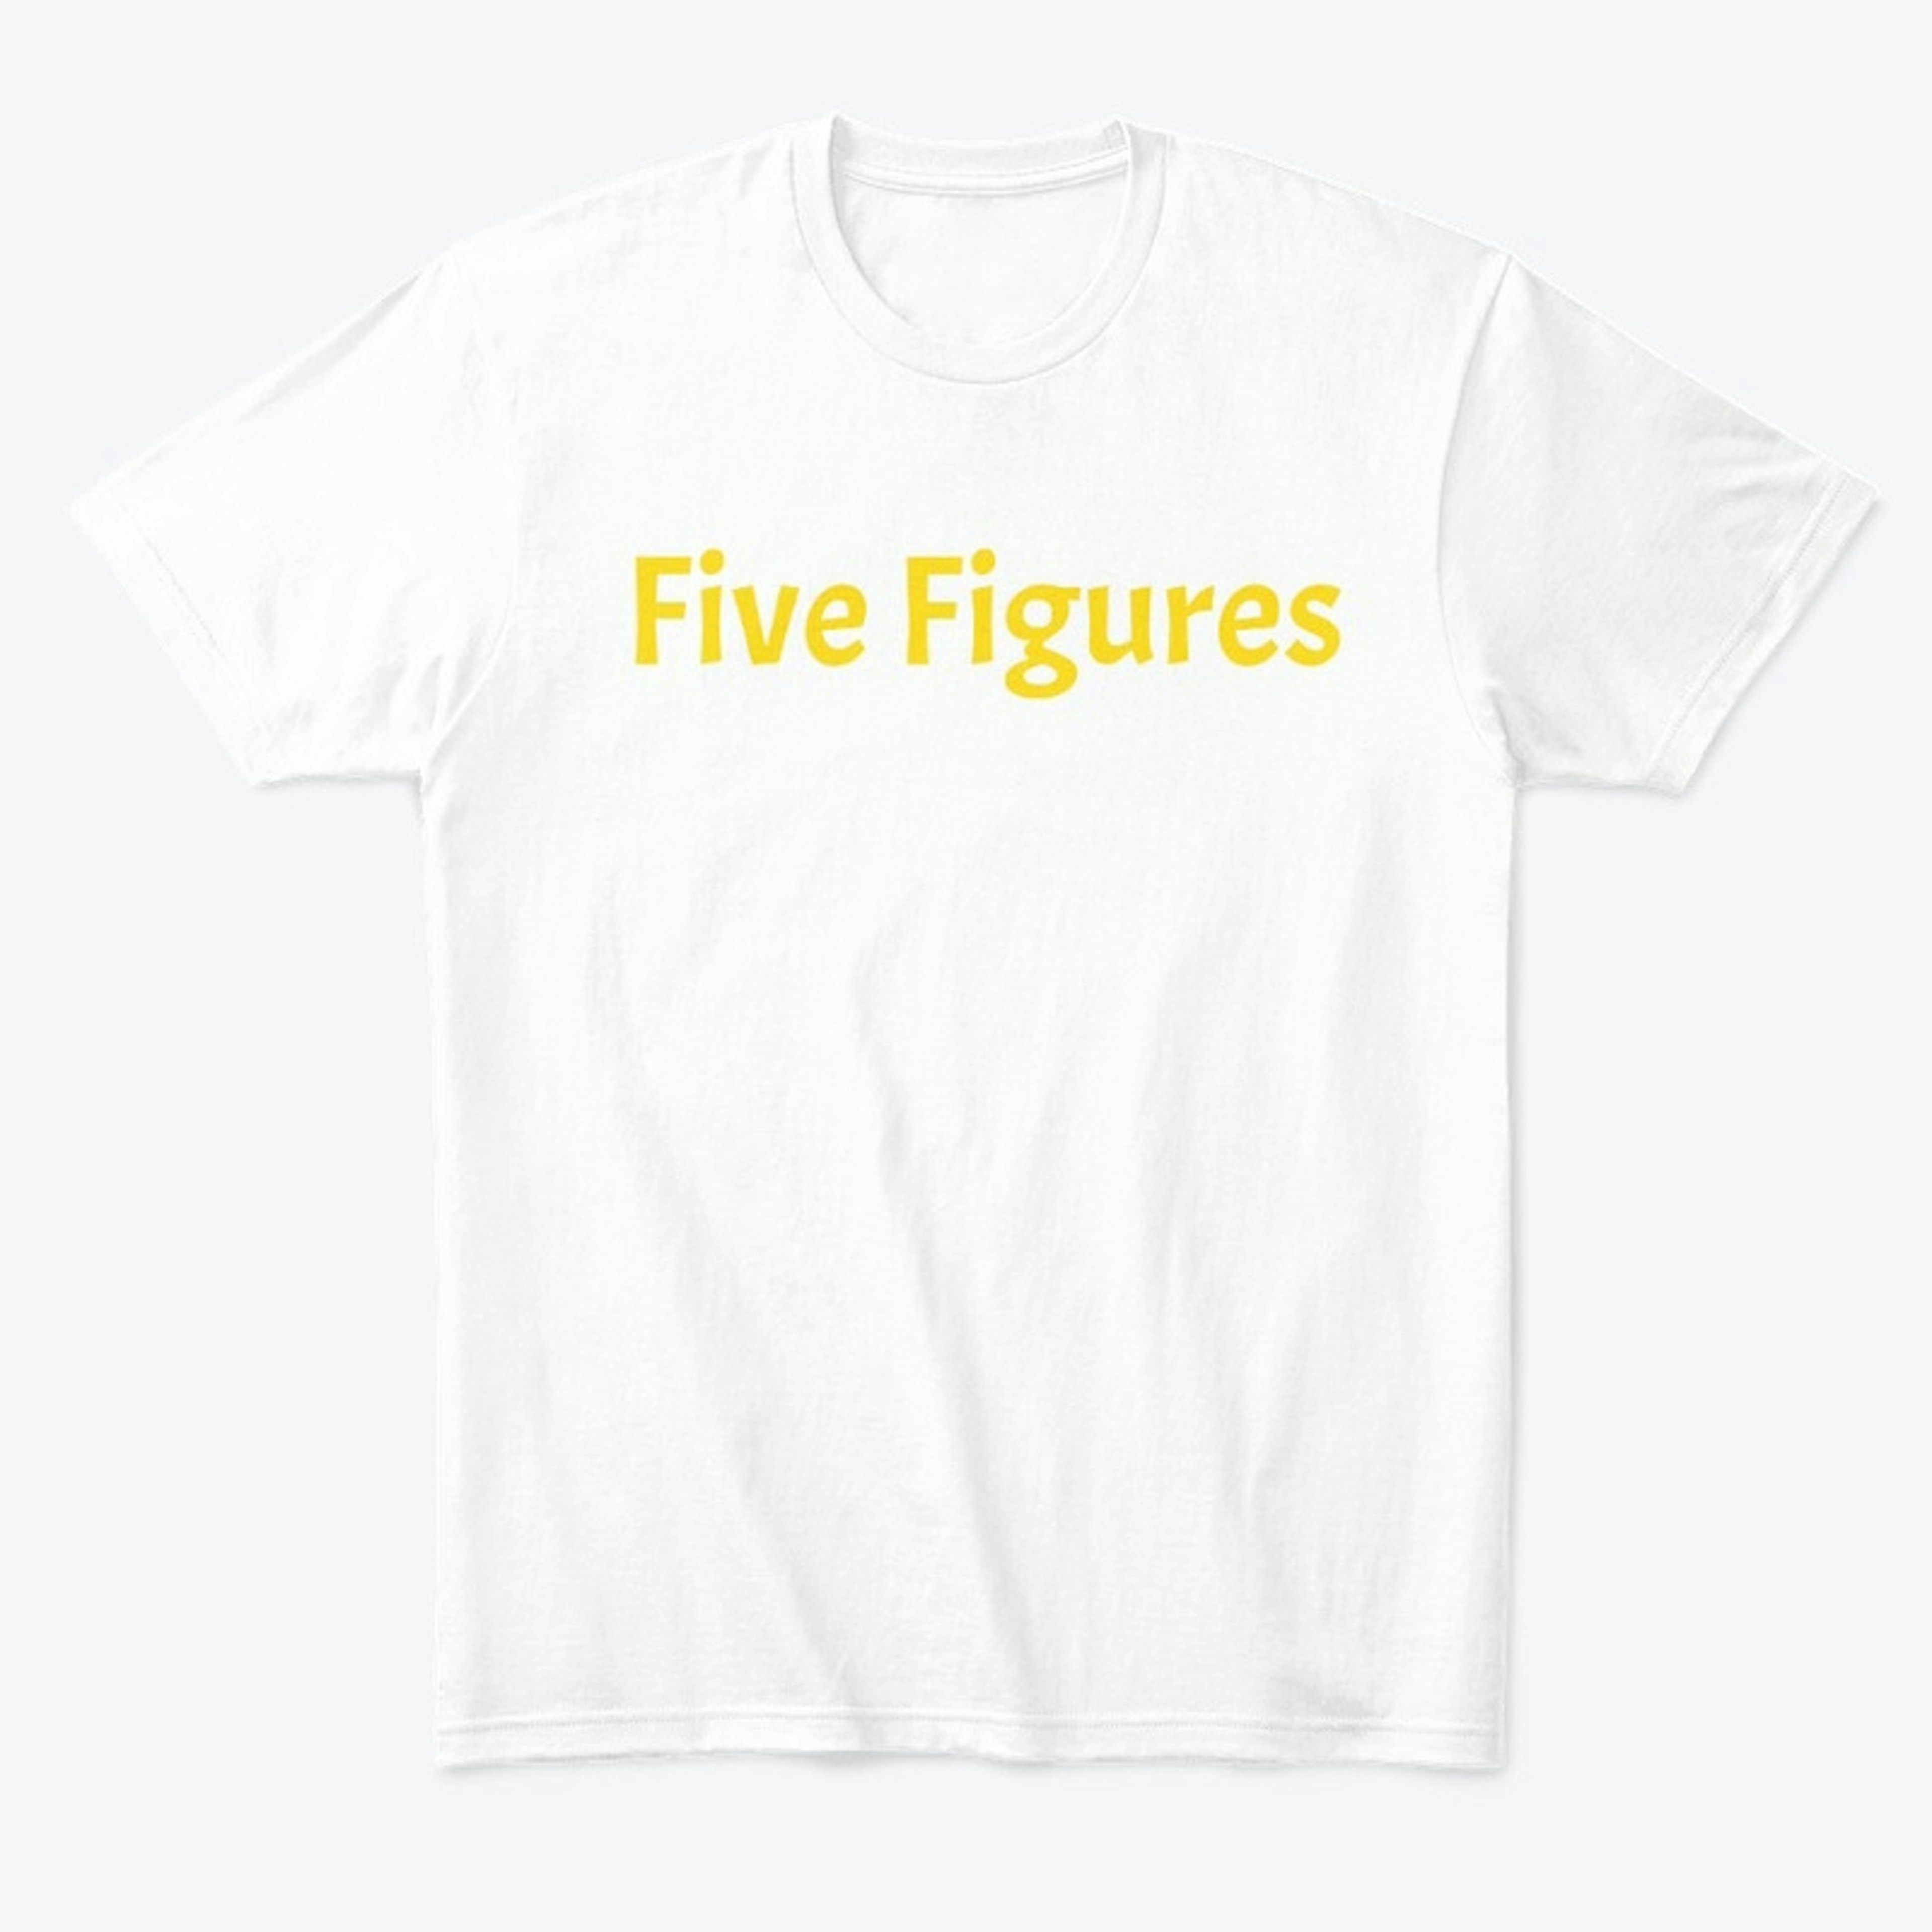 Five Figures